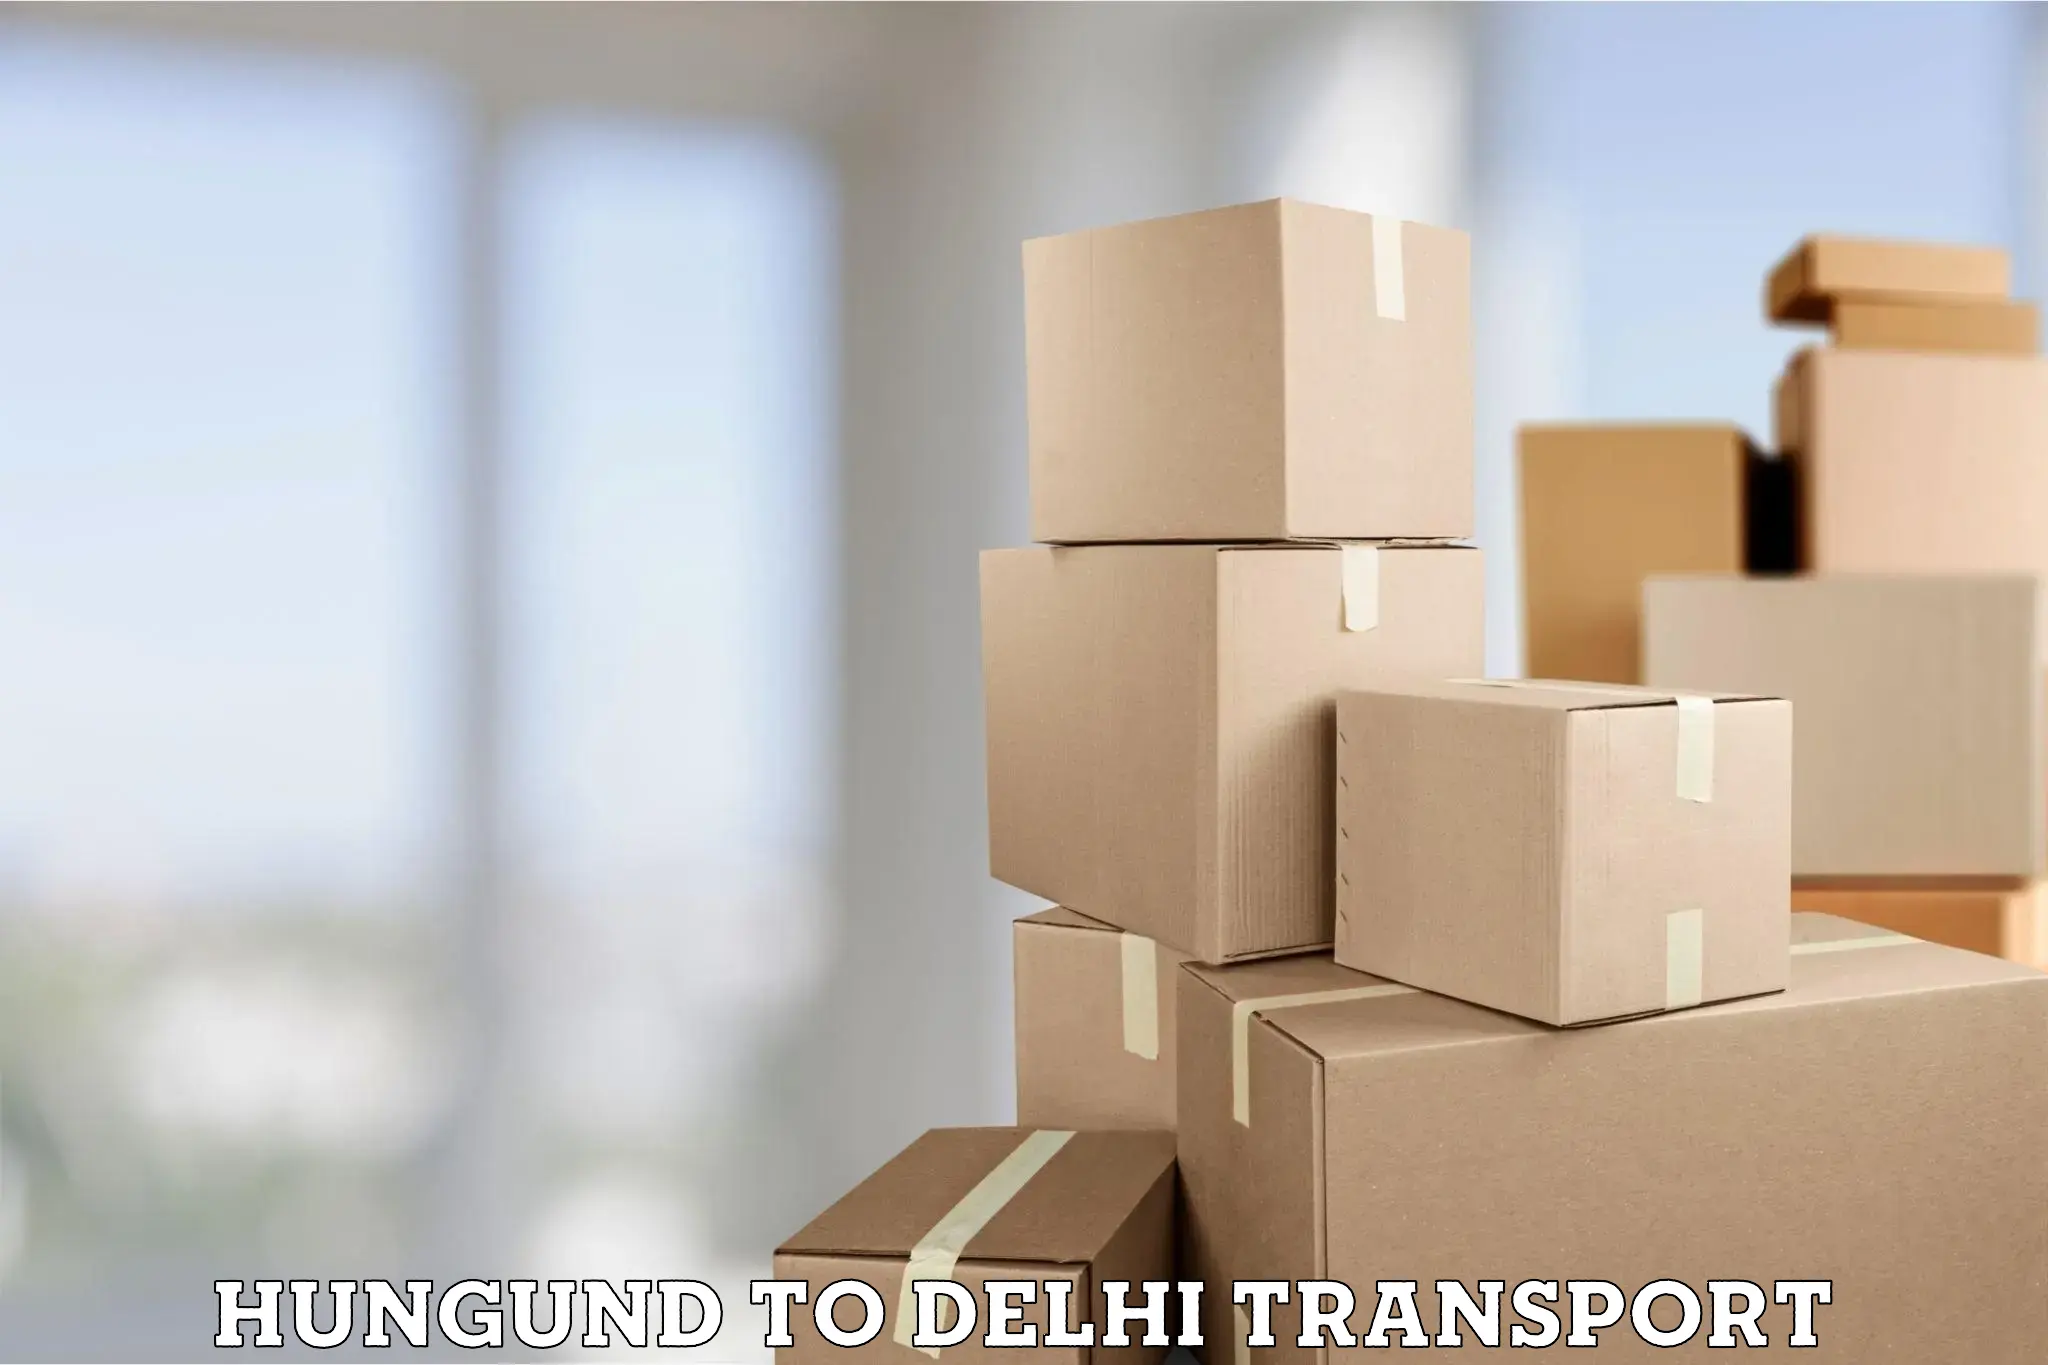 Road transport online services Hungund to IIT Delhi